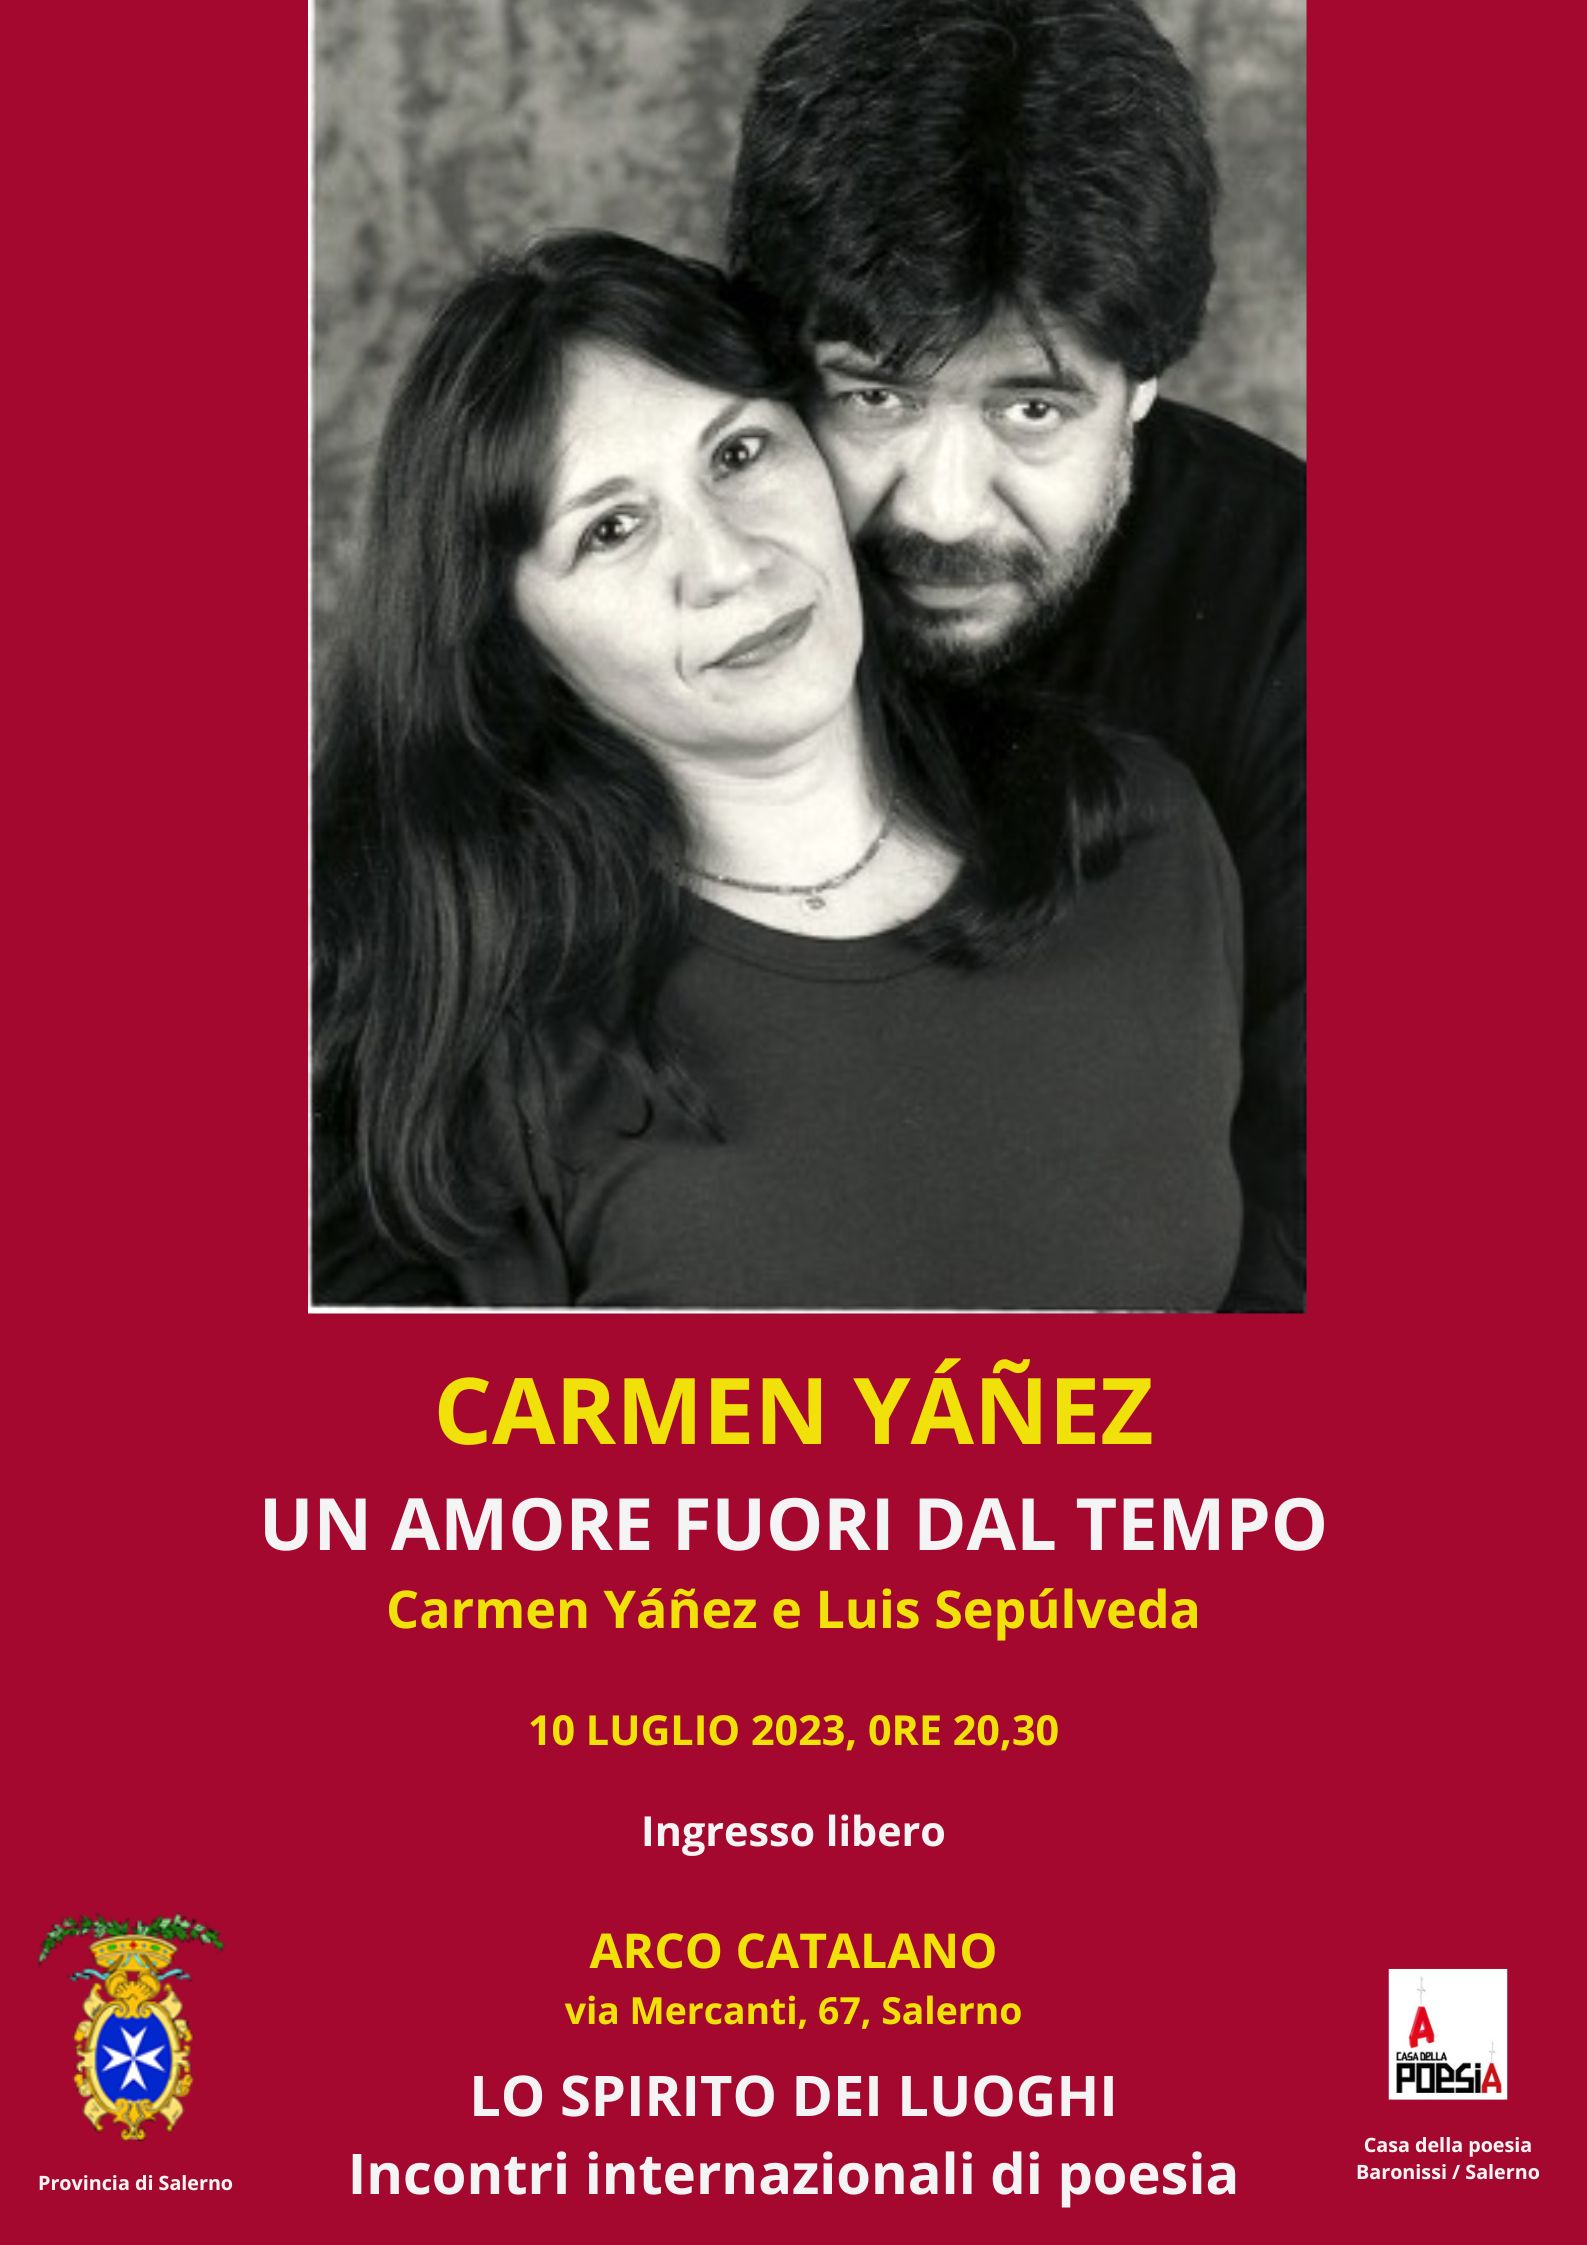 Salerno: all’Arco Catalano serata culturale con poesia di Carmen Yáñez